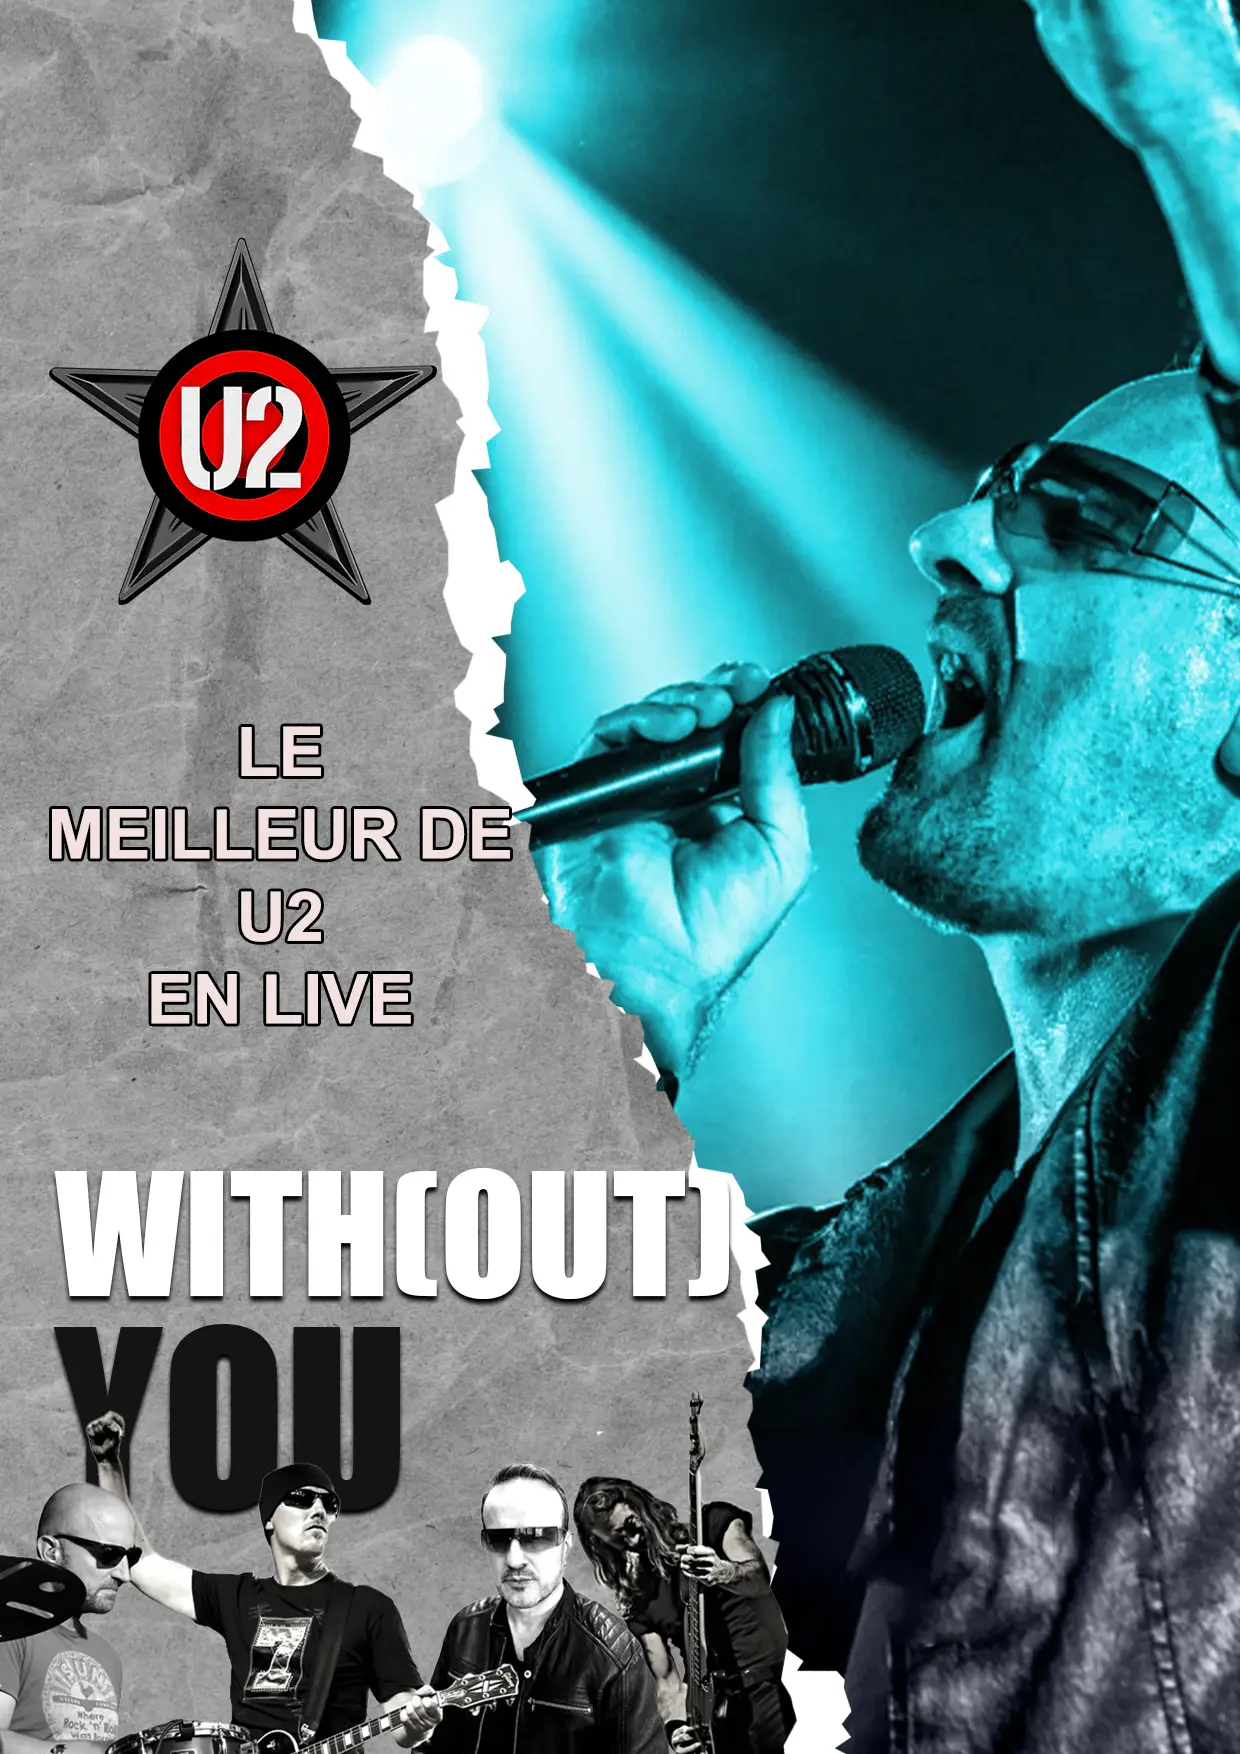 Claude Gérard Production présente Tribute U2 hommage u2 without you